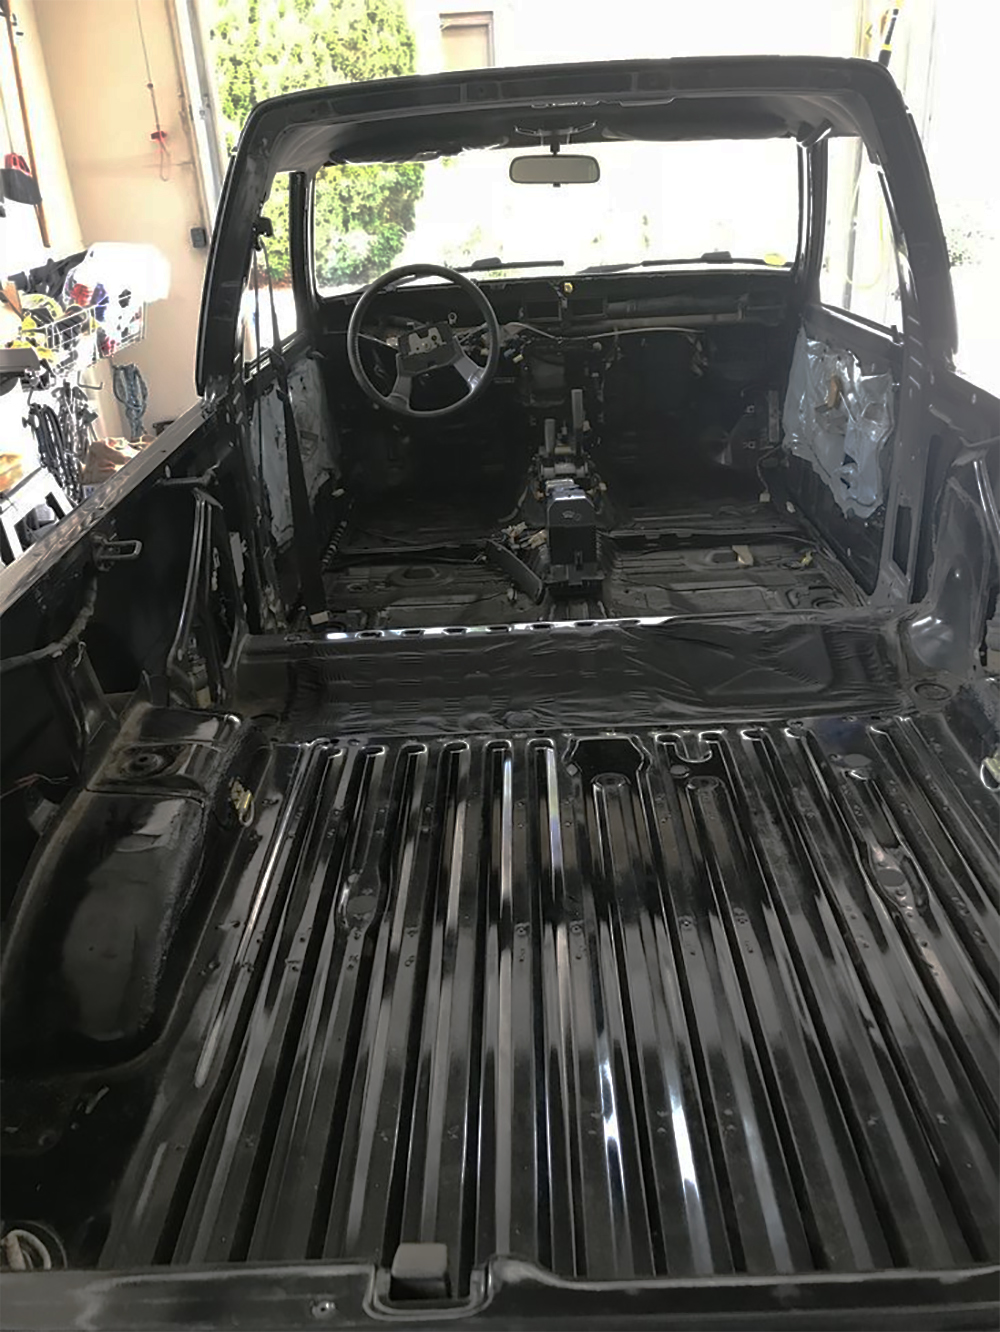 Stripped Turbo 4Runner Interior